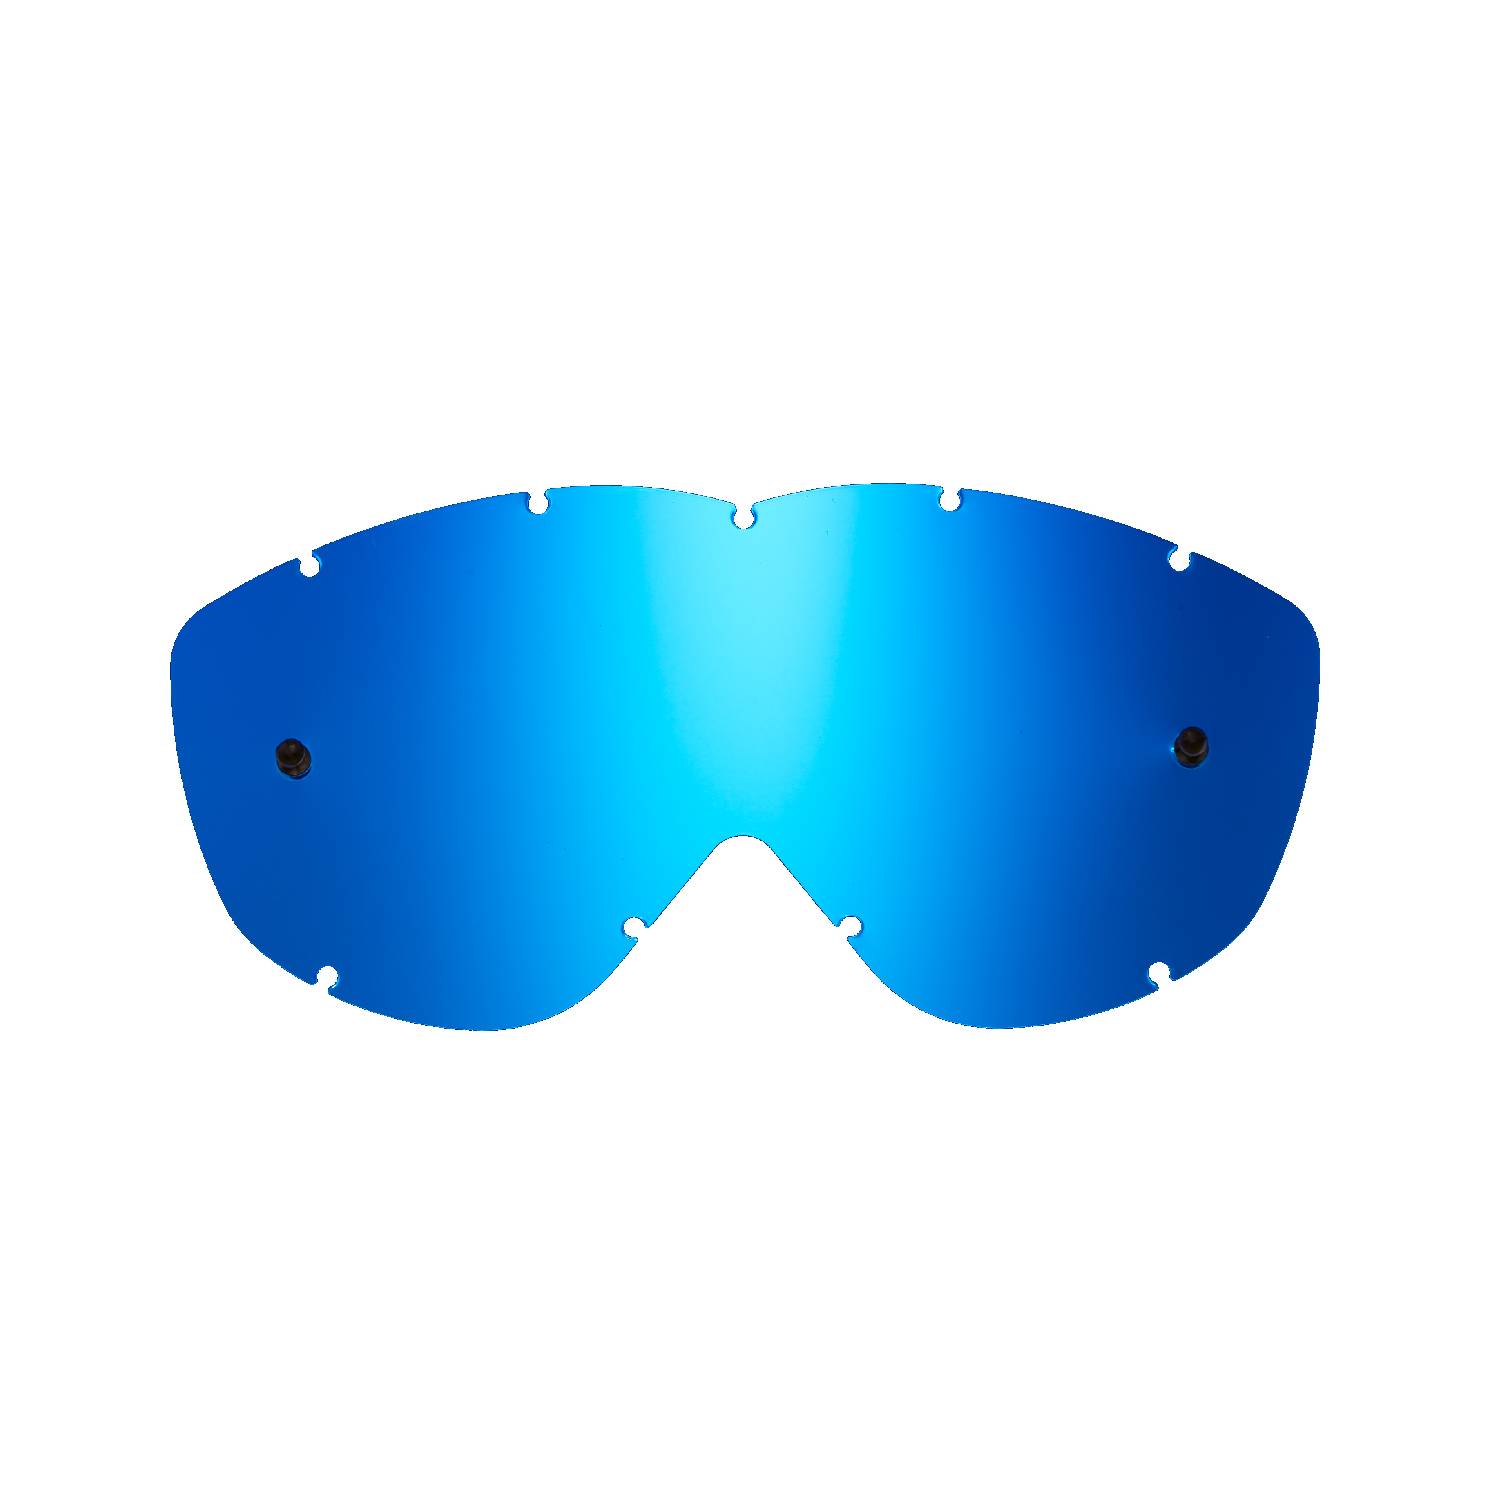 Lente di ricambio blu specchiato compatibile per occhiale/maschera Spy Alloy / Targa